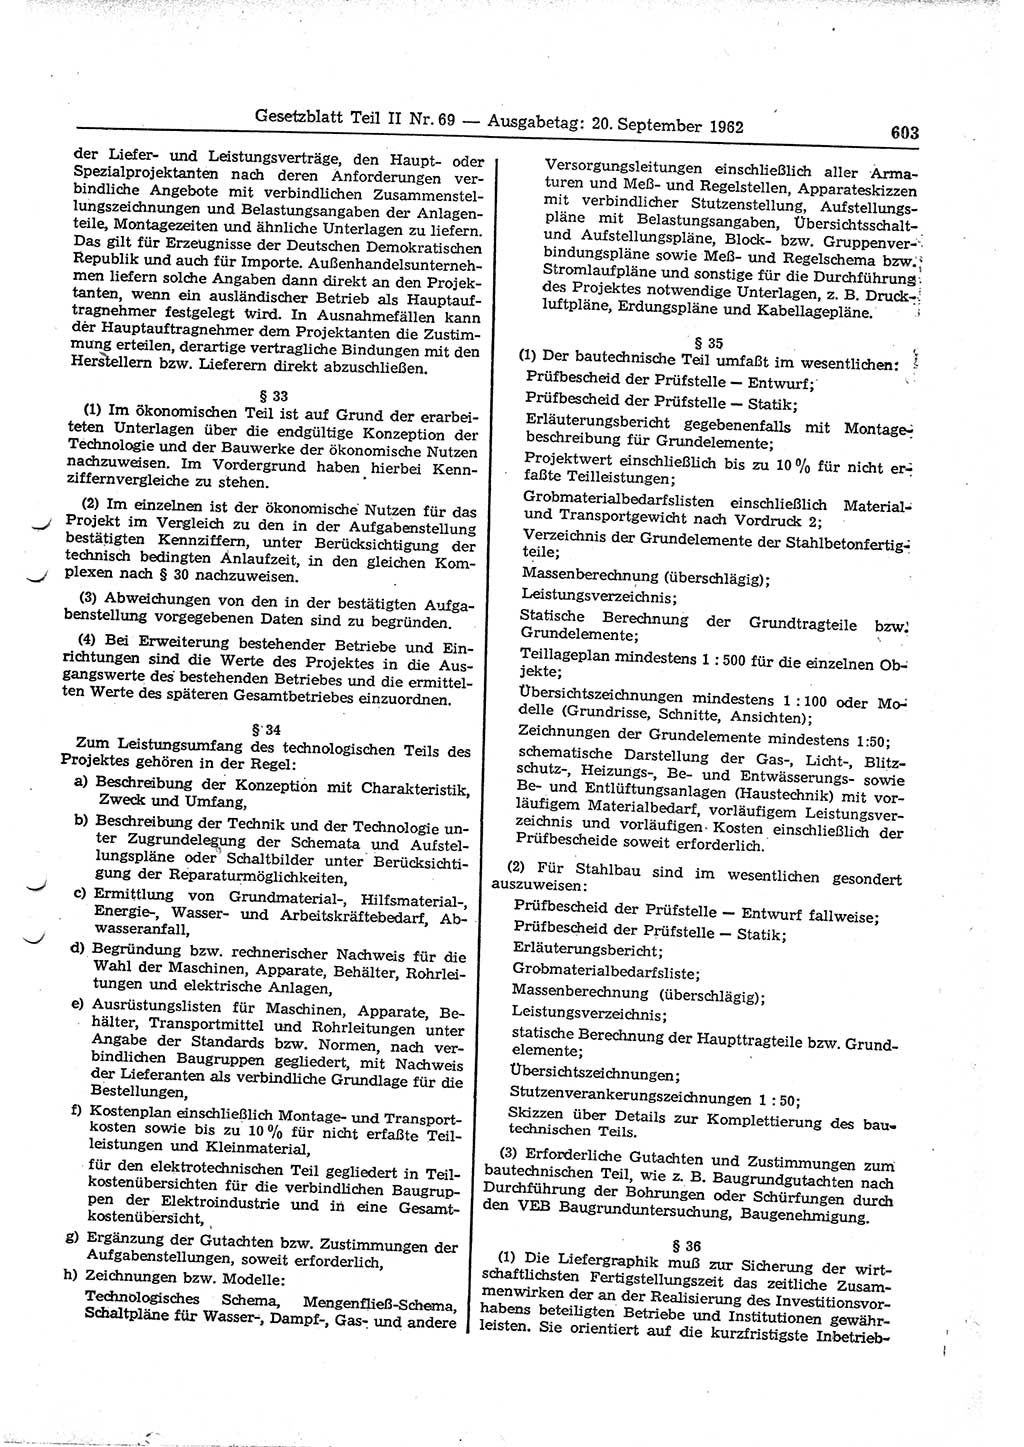 Gesetzblatt (GBl.) der Deutschen Demokratischen Republik (DDR) Teil ⅠⅠ 1962, Seite 603 (GBl. DDR ⅠⅠ 1962, S. 603)